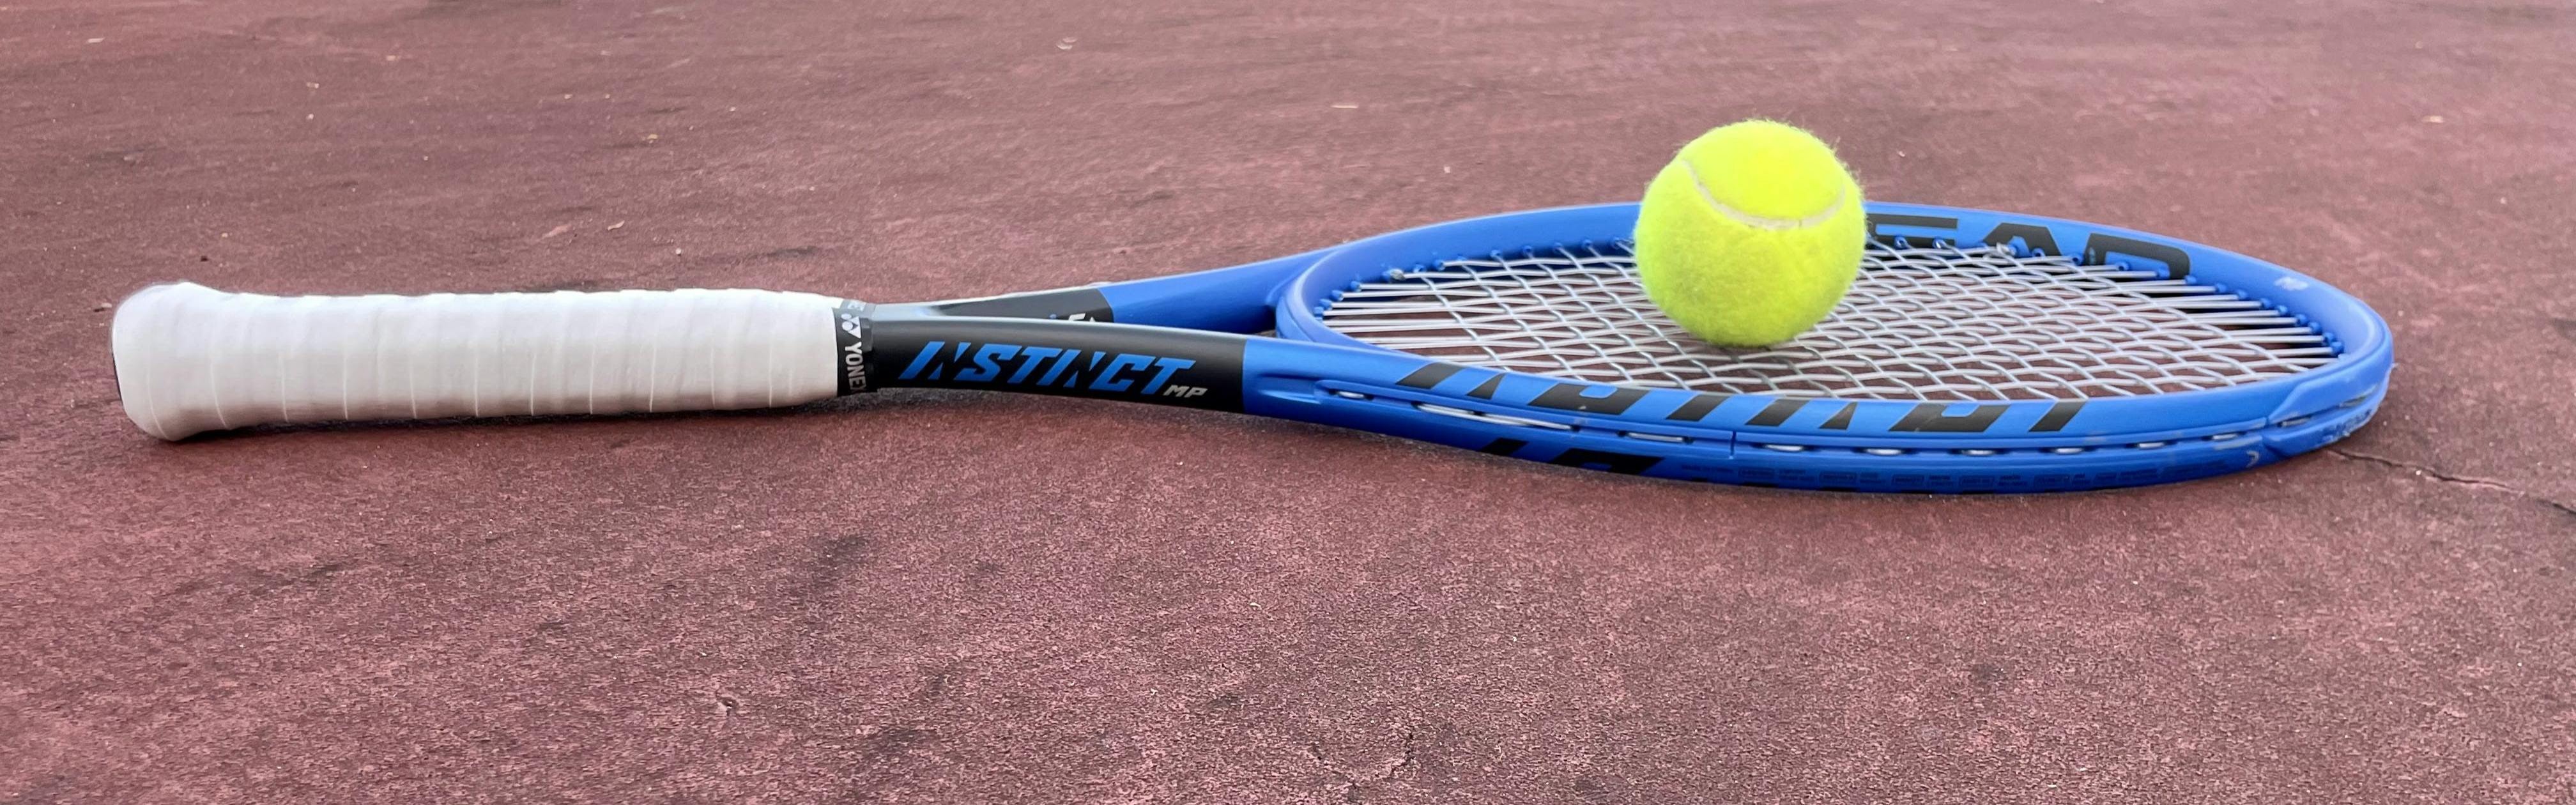 A Head Instinct MP 2022 Racquet lying on a tennis court. 